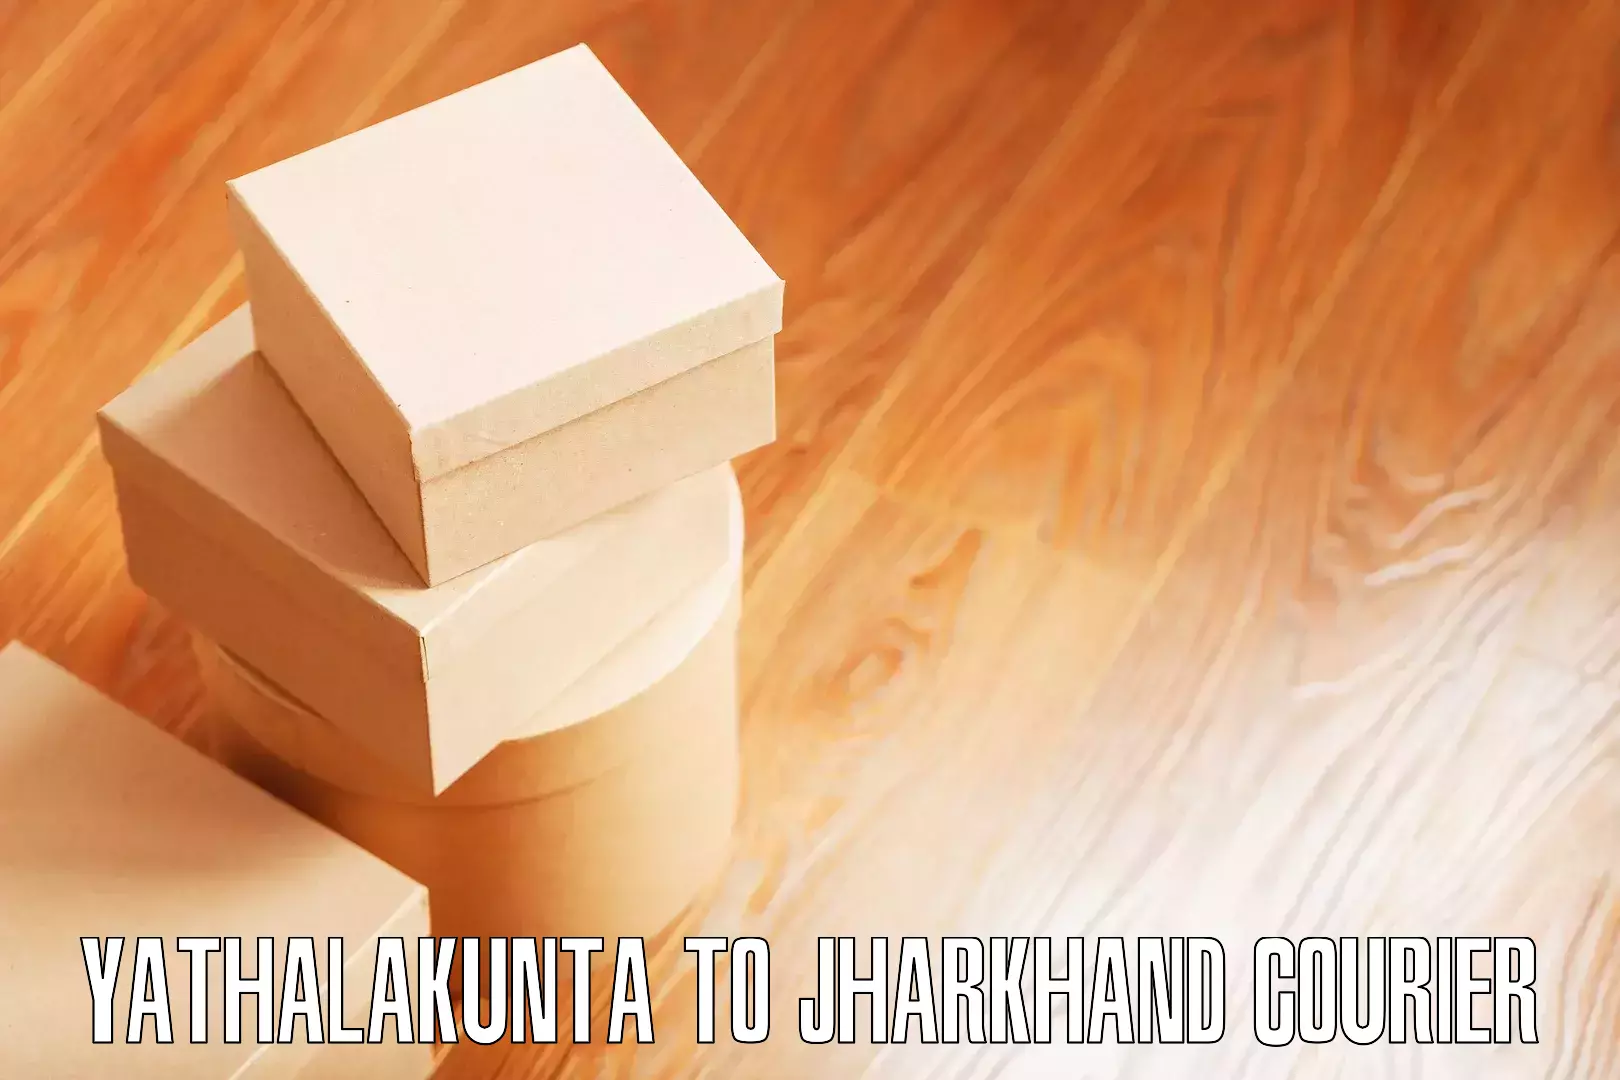 Quick furniture moving Yathalakunta to Tandwa